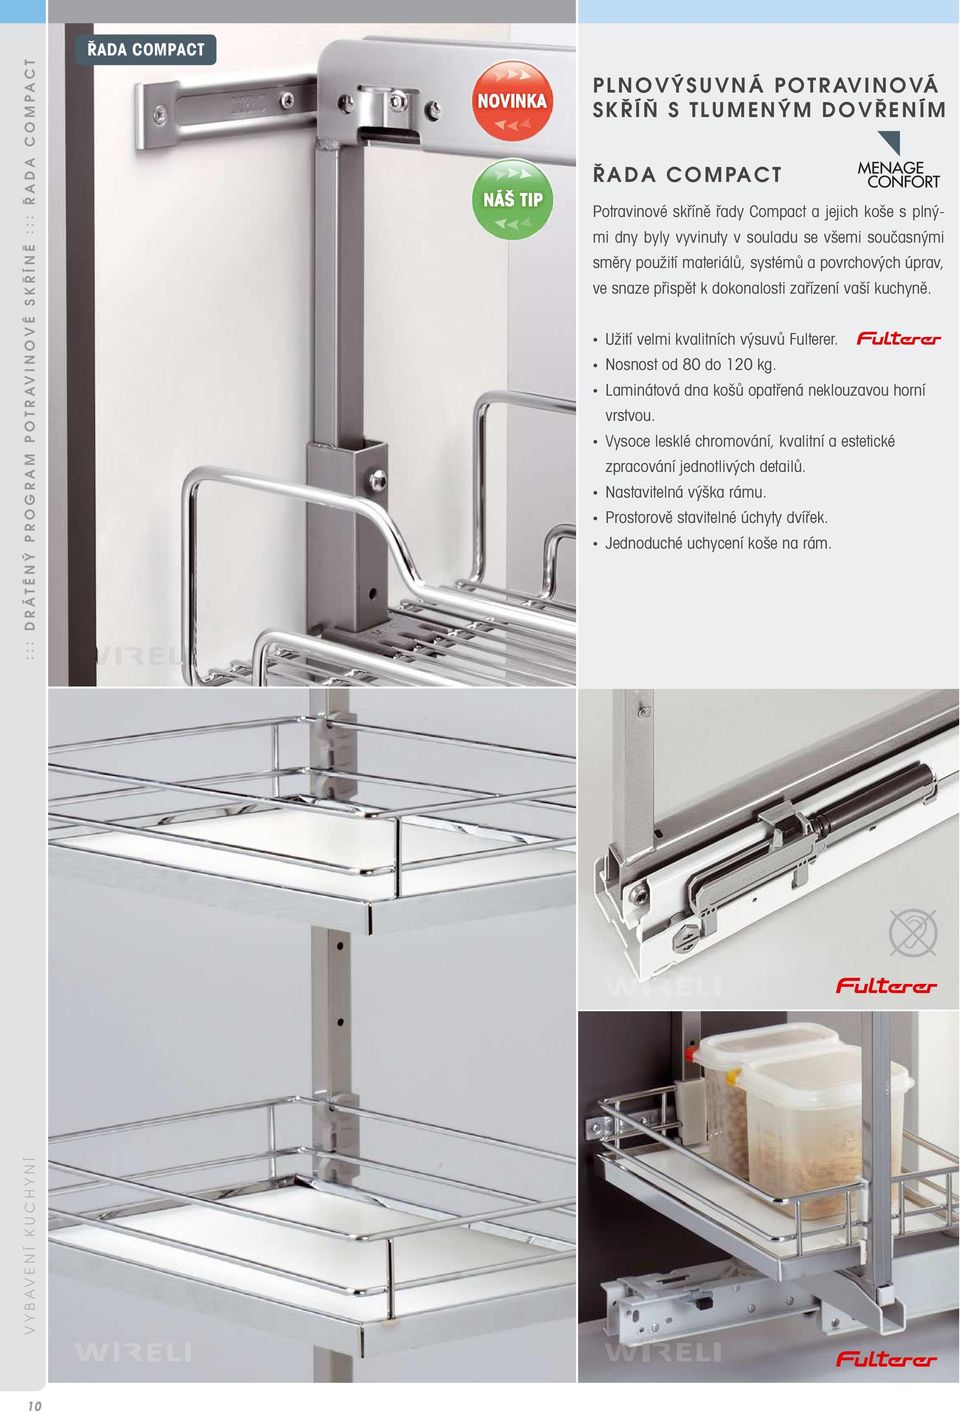 snaze přispět k dokonalosti zařízení vaší kuchyně. Užití velmi kvalitních výsuvů Fulterer. Nosnost od 80 do 120 kg.